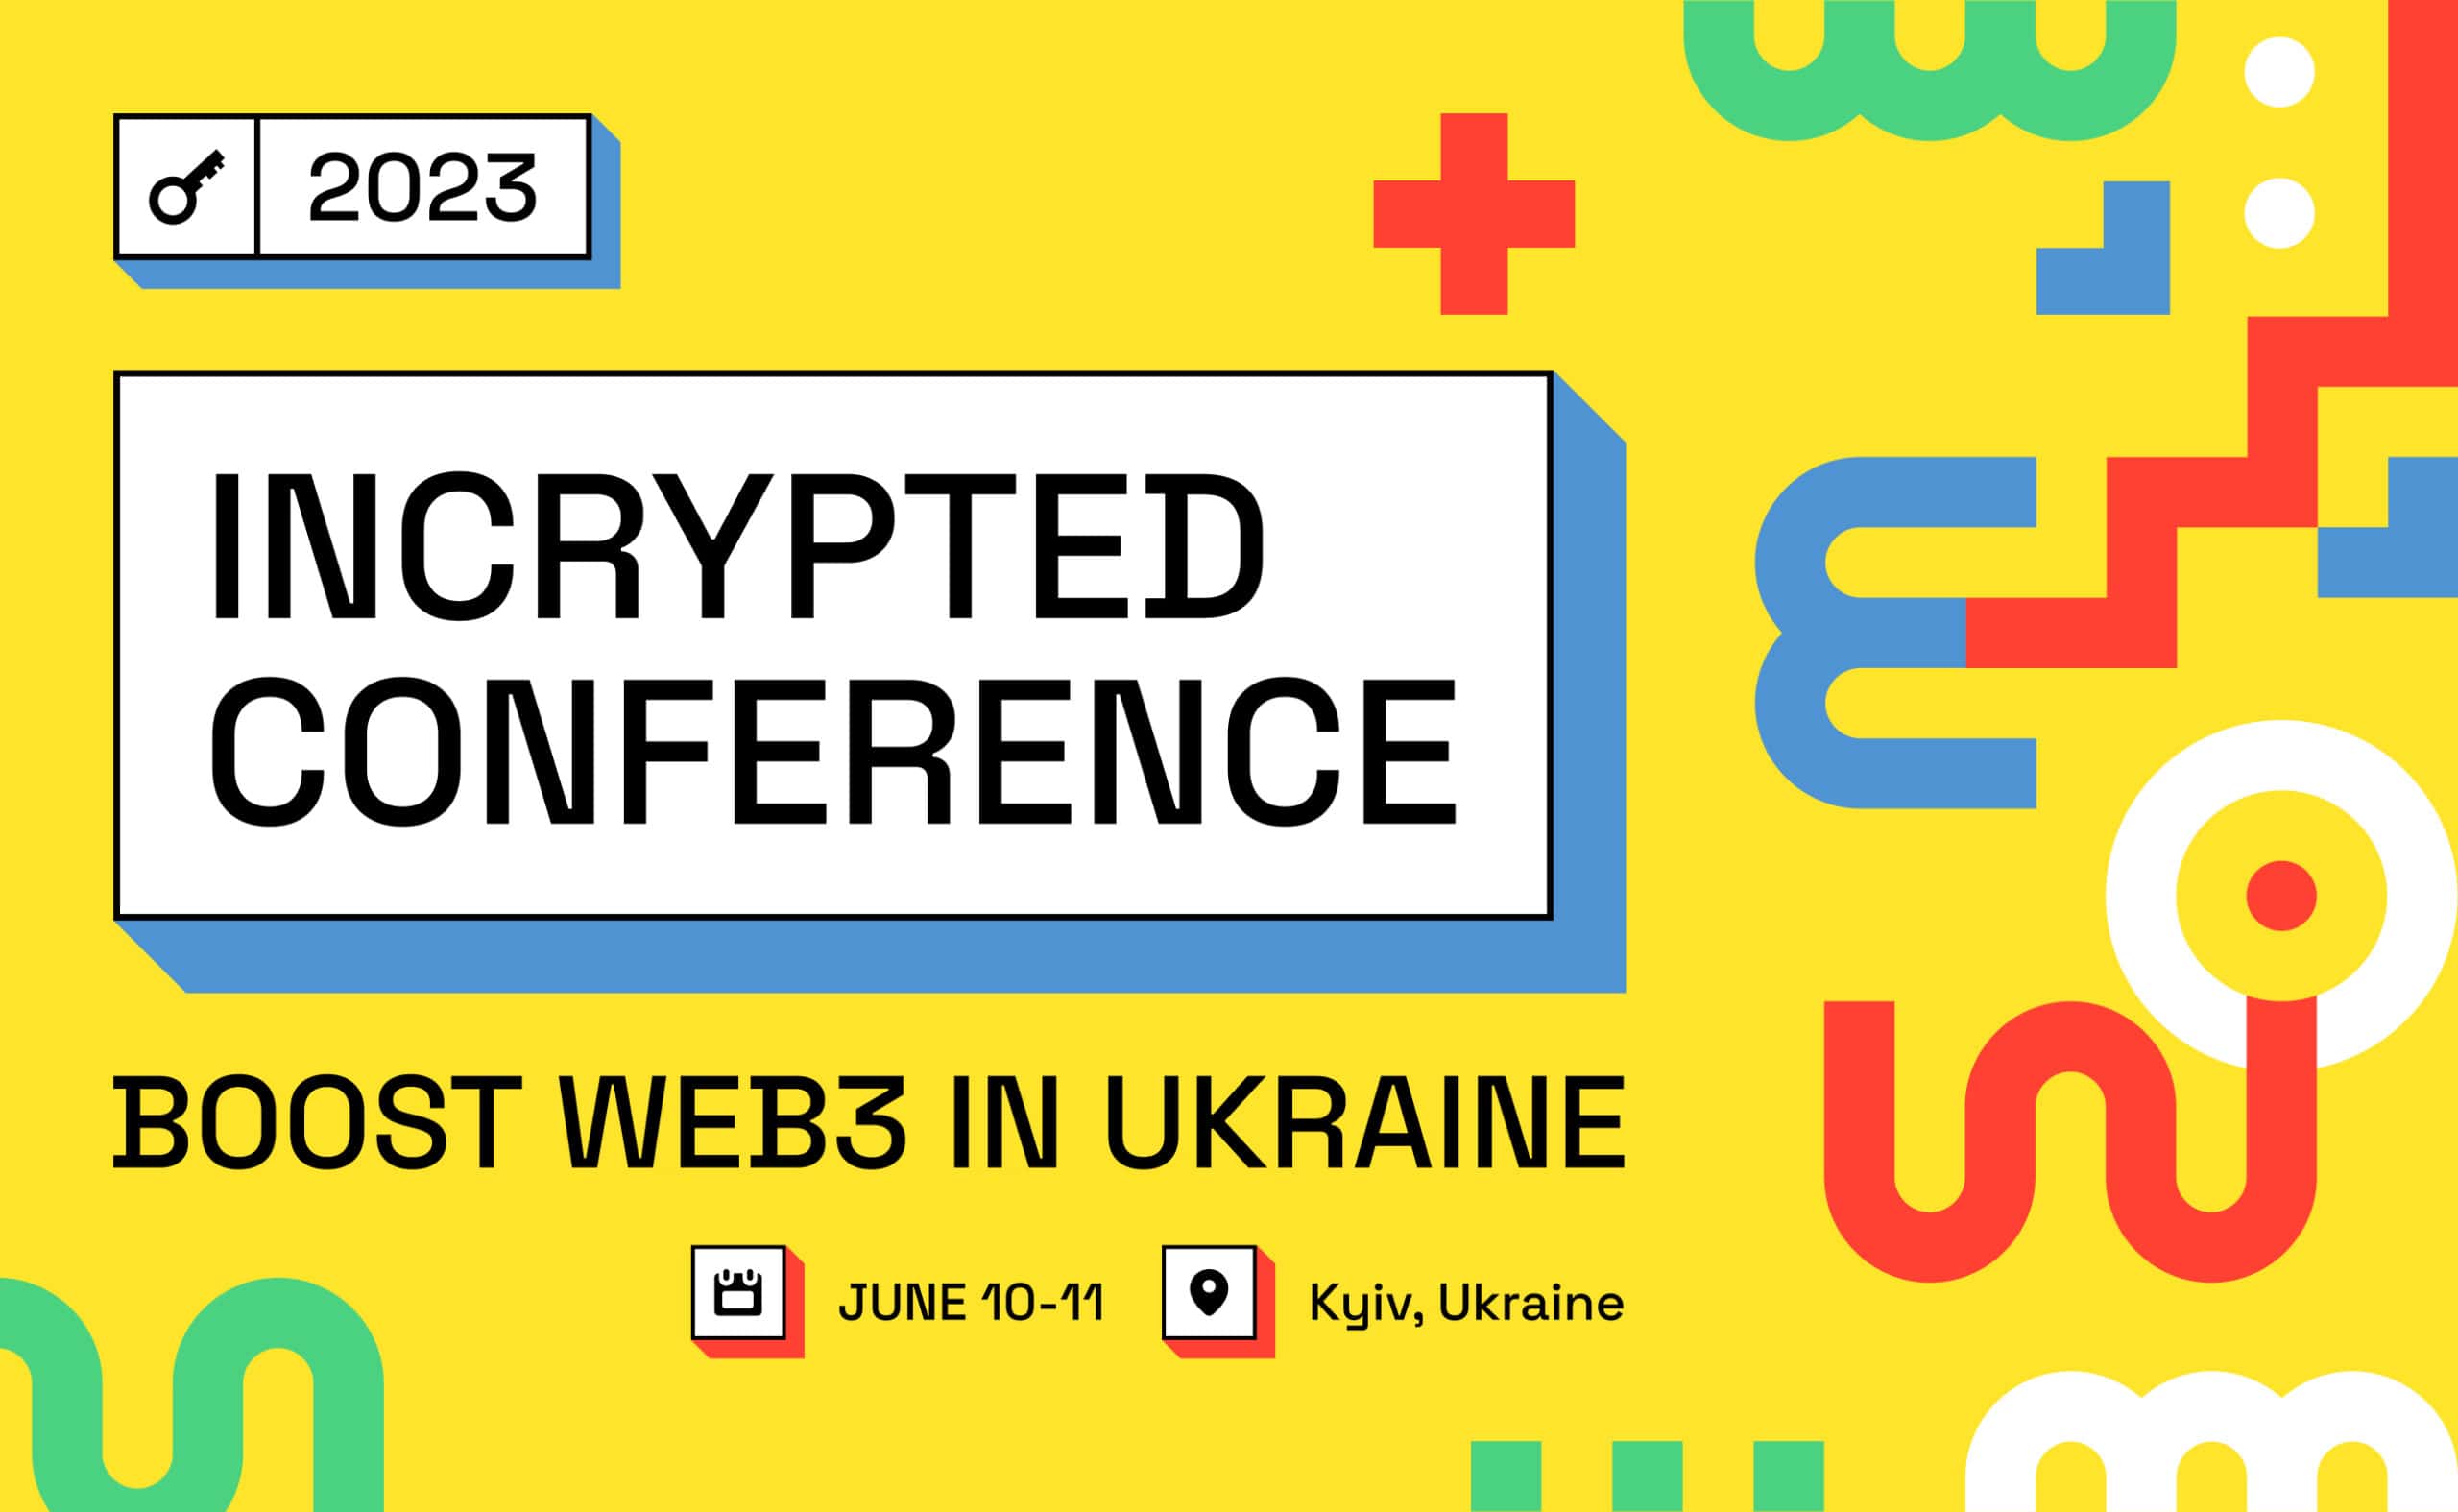 16 представителей мировых и украинских криптостартапов выступят онлайн на Incrypted Conference 2023. Заглавный коллаж новости.